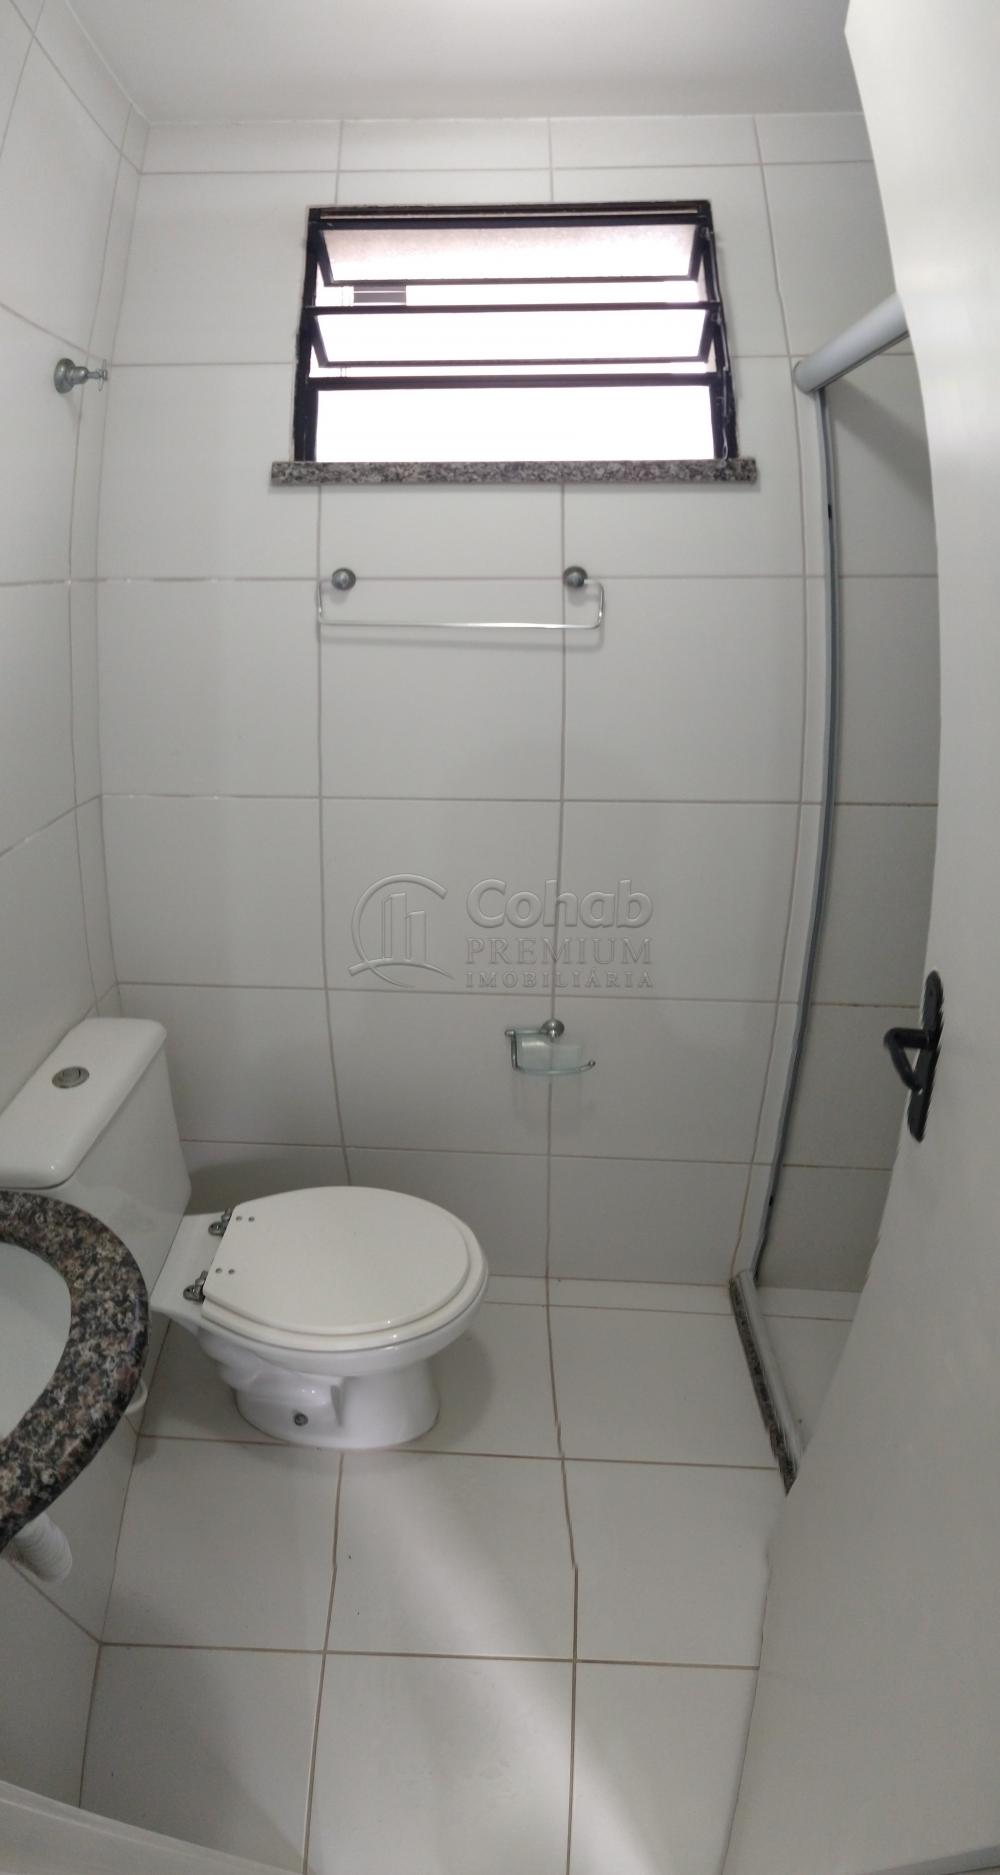 Alugar Apartamento / Padrão em Aracaju R$ 650,00 - Foto 14